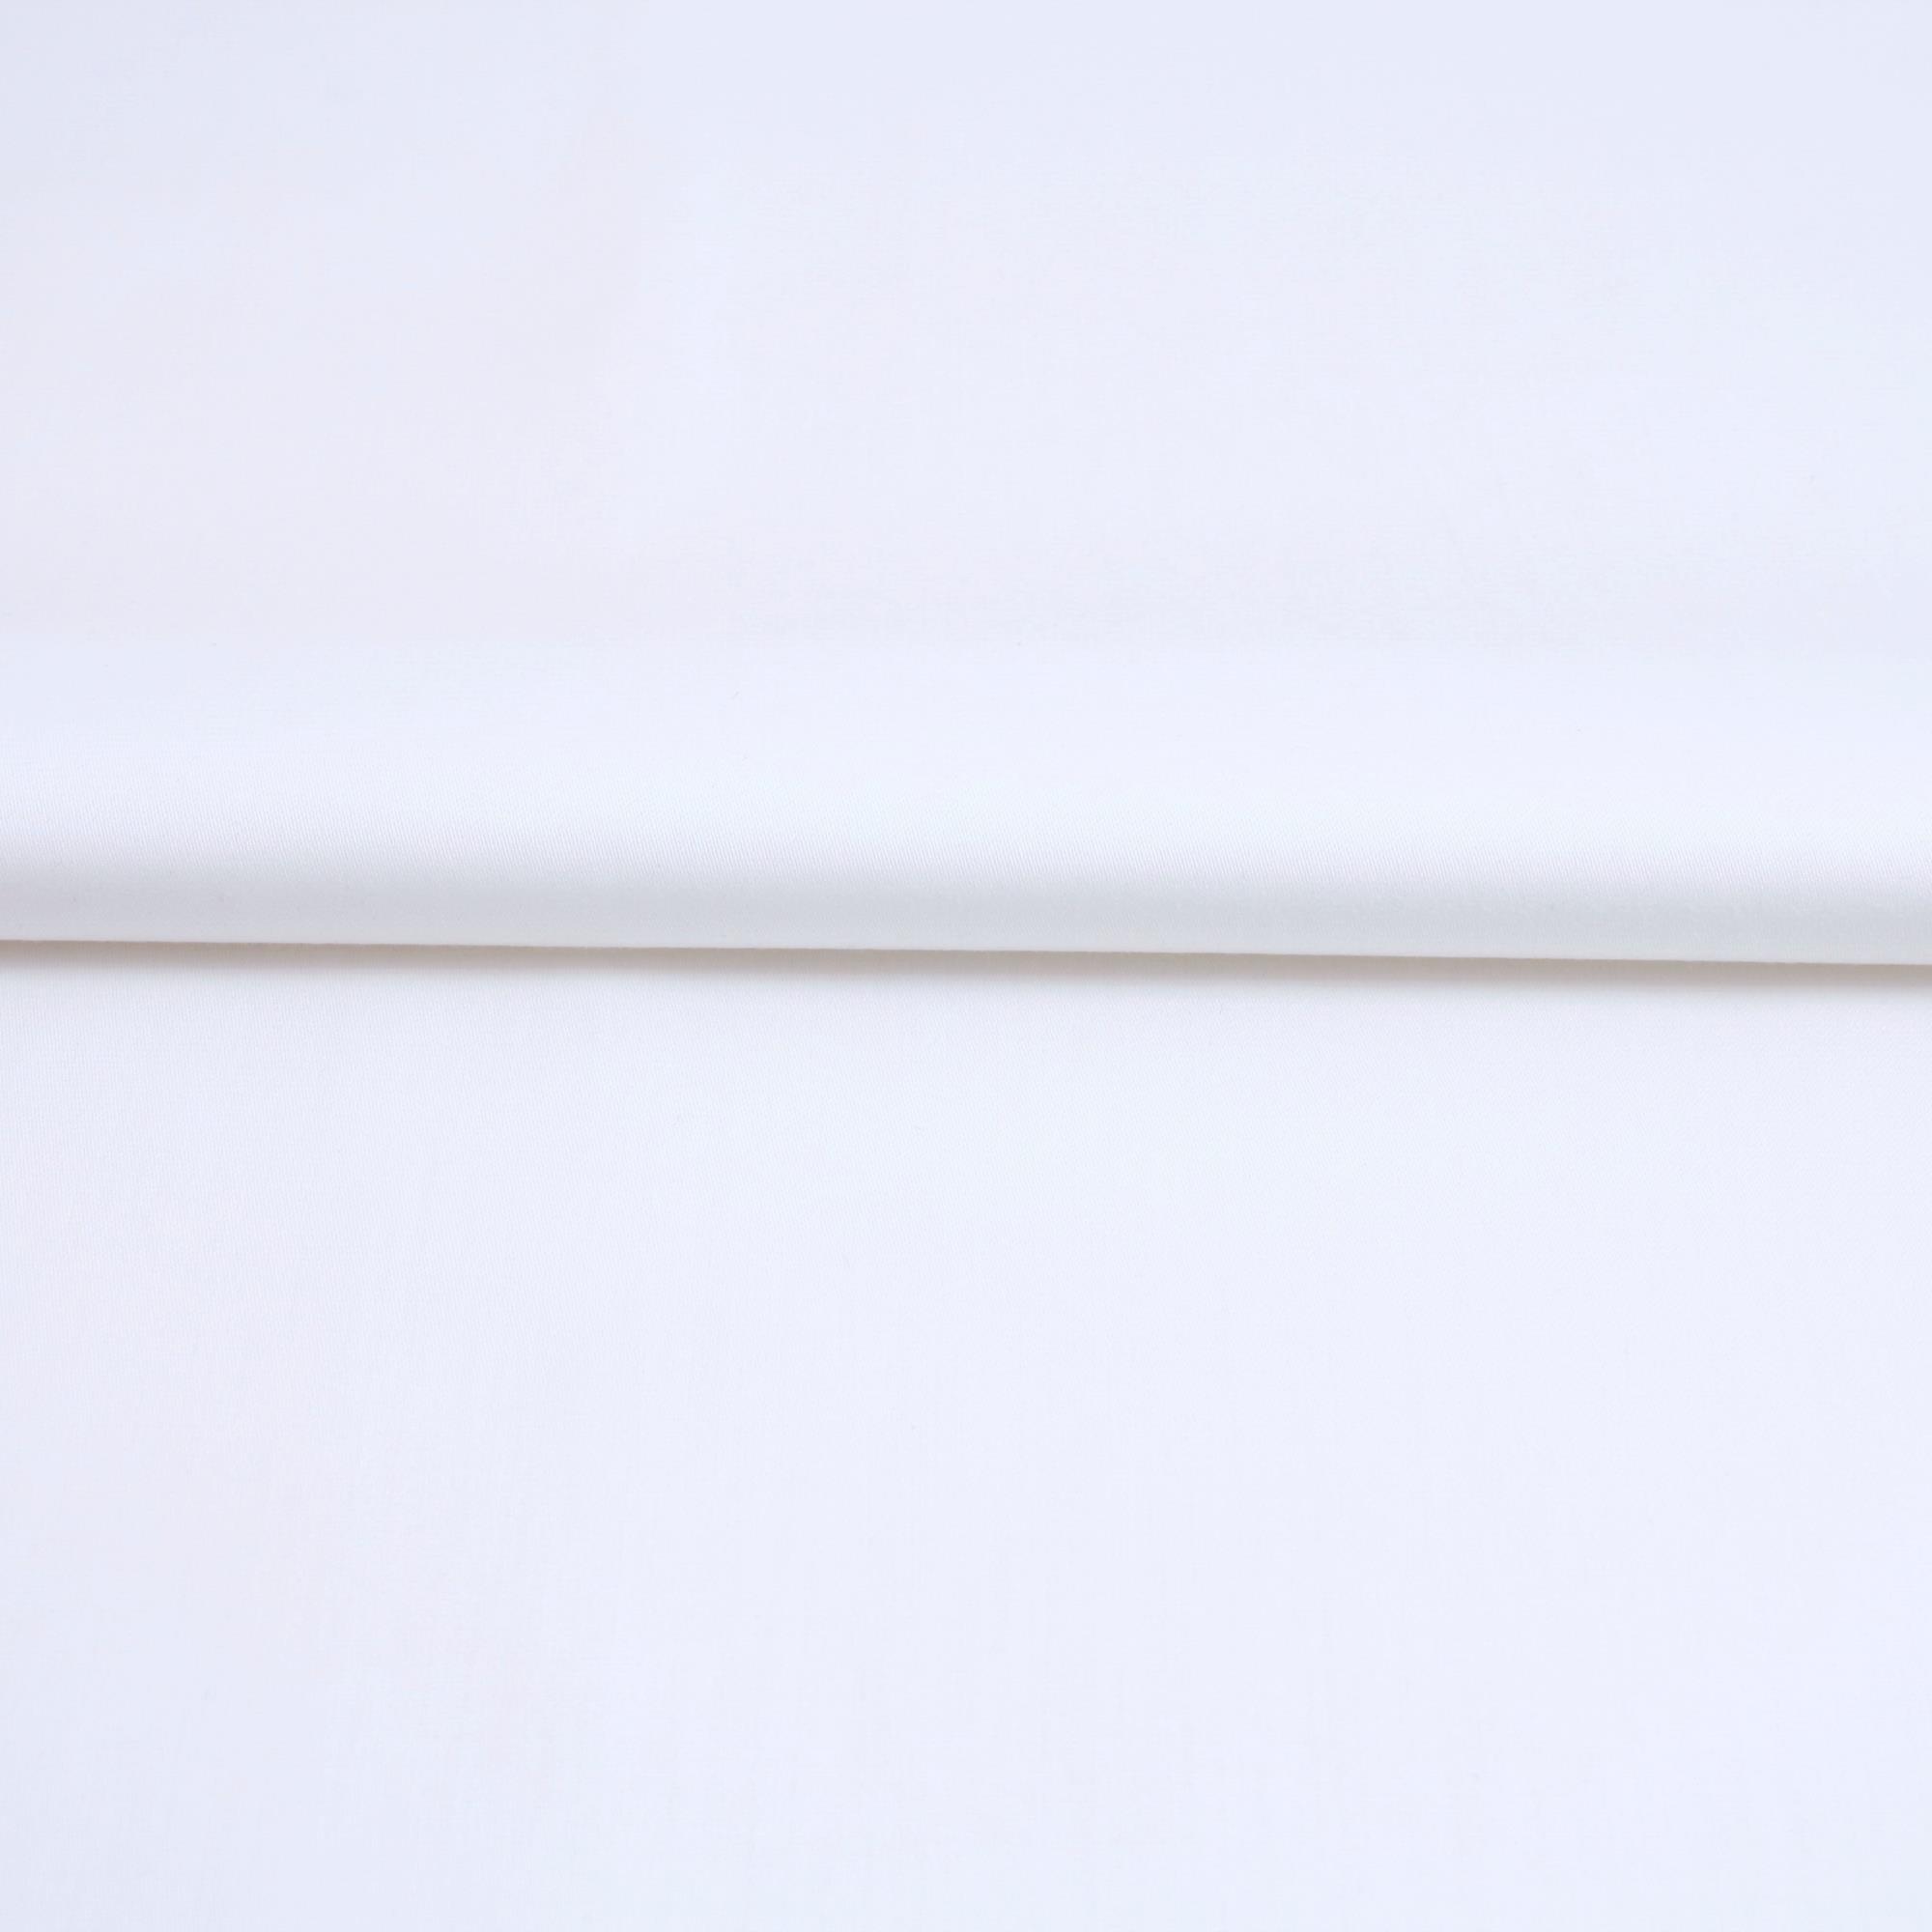 Stoff Meterware Baumwolle Linon Weiß 150 cm